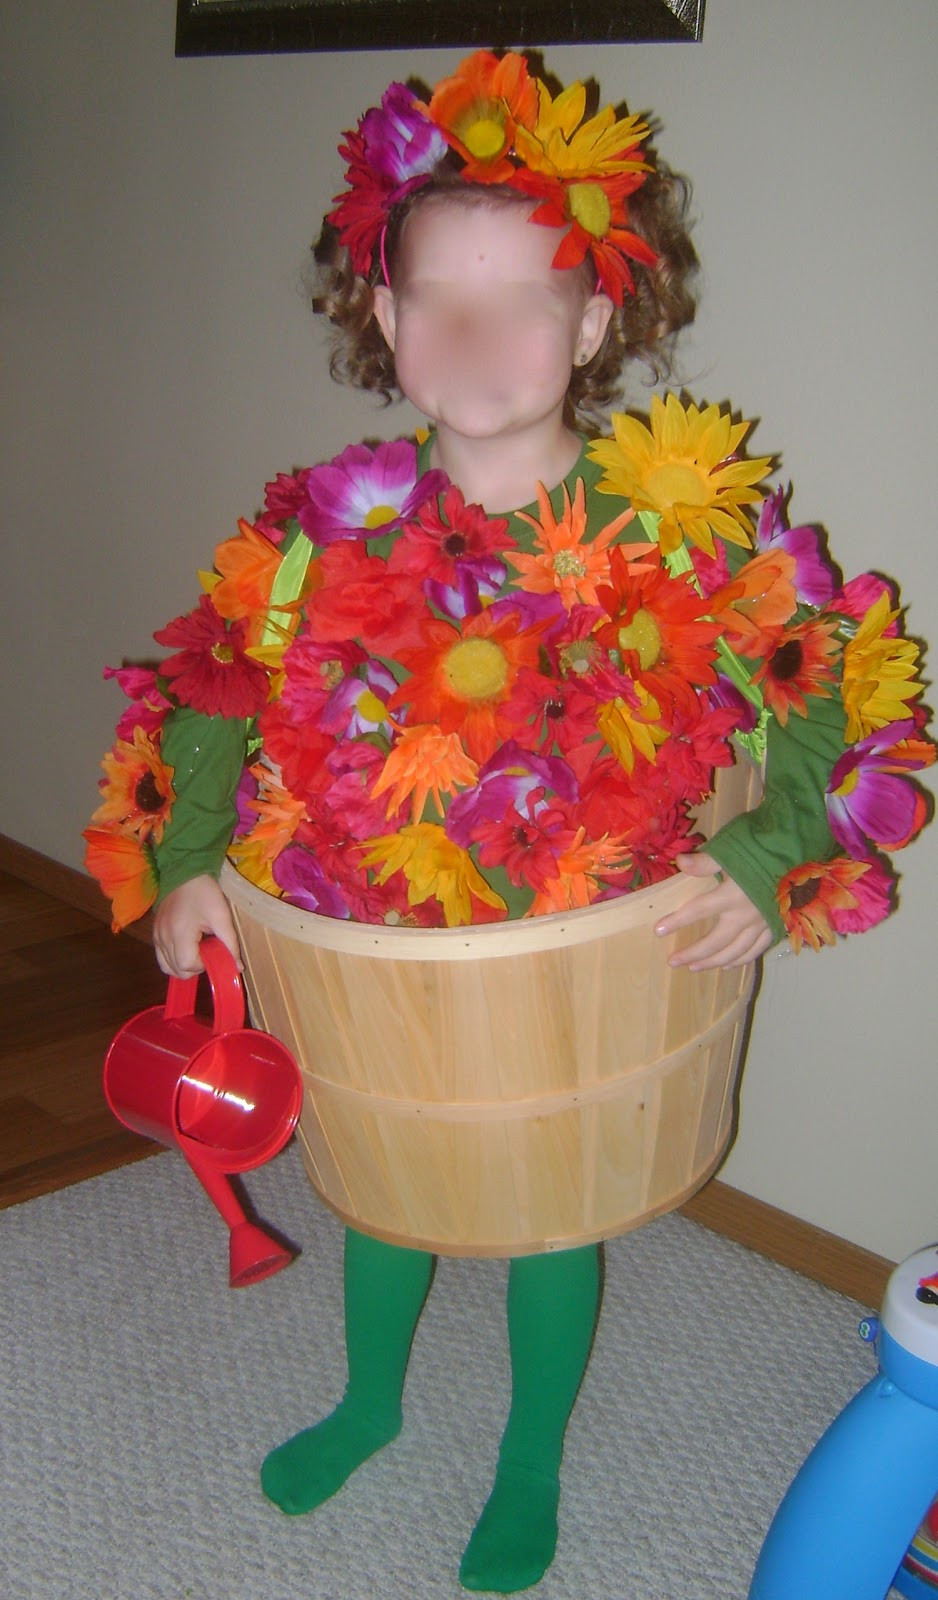 Flower Halloween Costume
 Homemaker in Heels 46 DIY Halloween Costumes for Kids